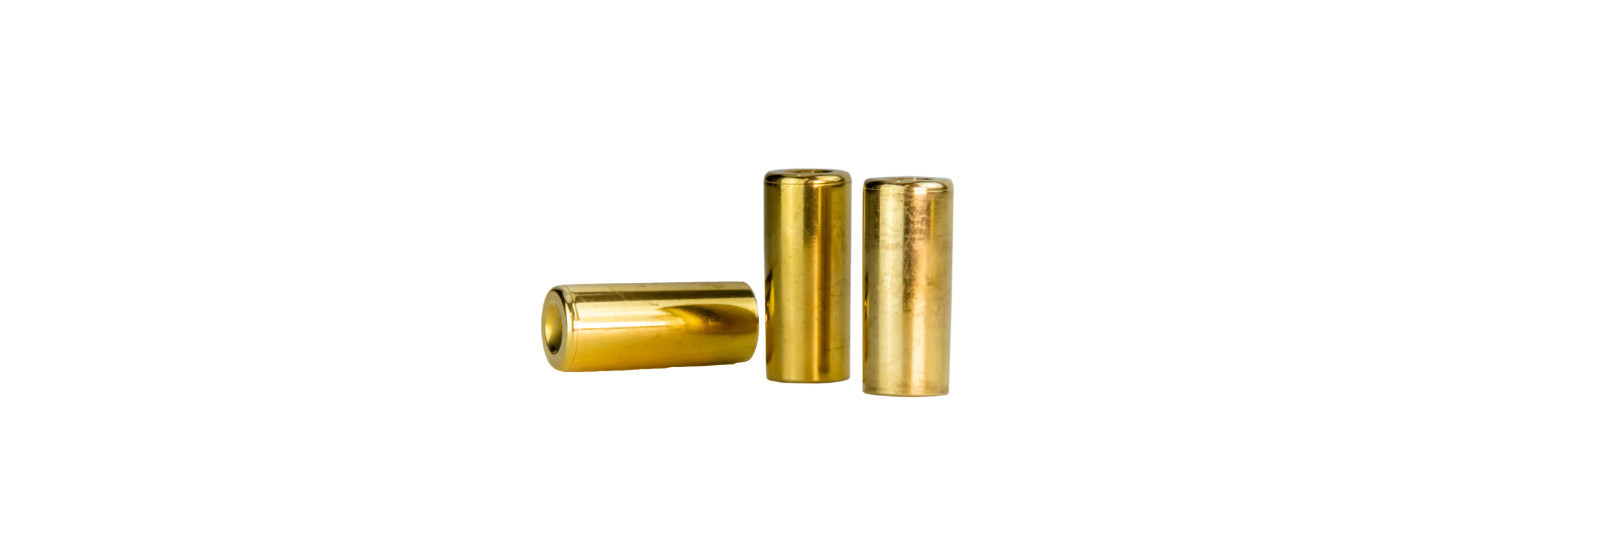 10 brass cases for .541 modern bullet